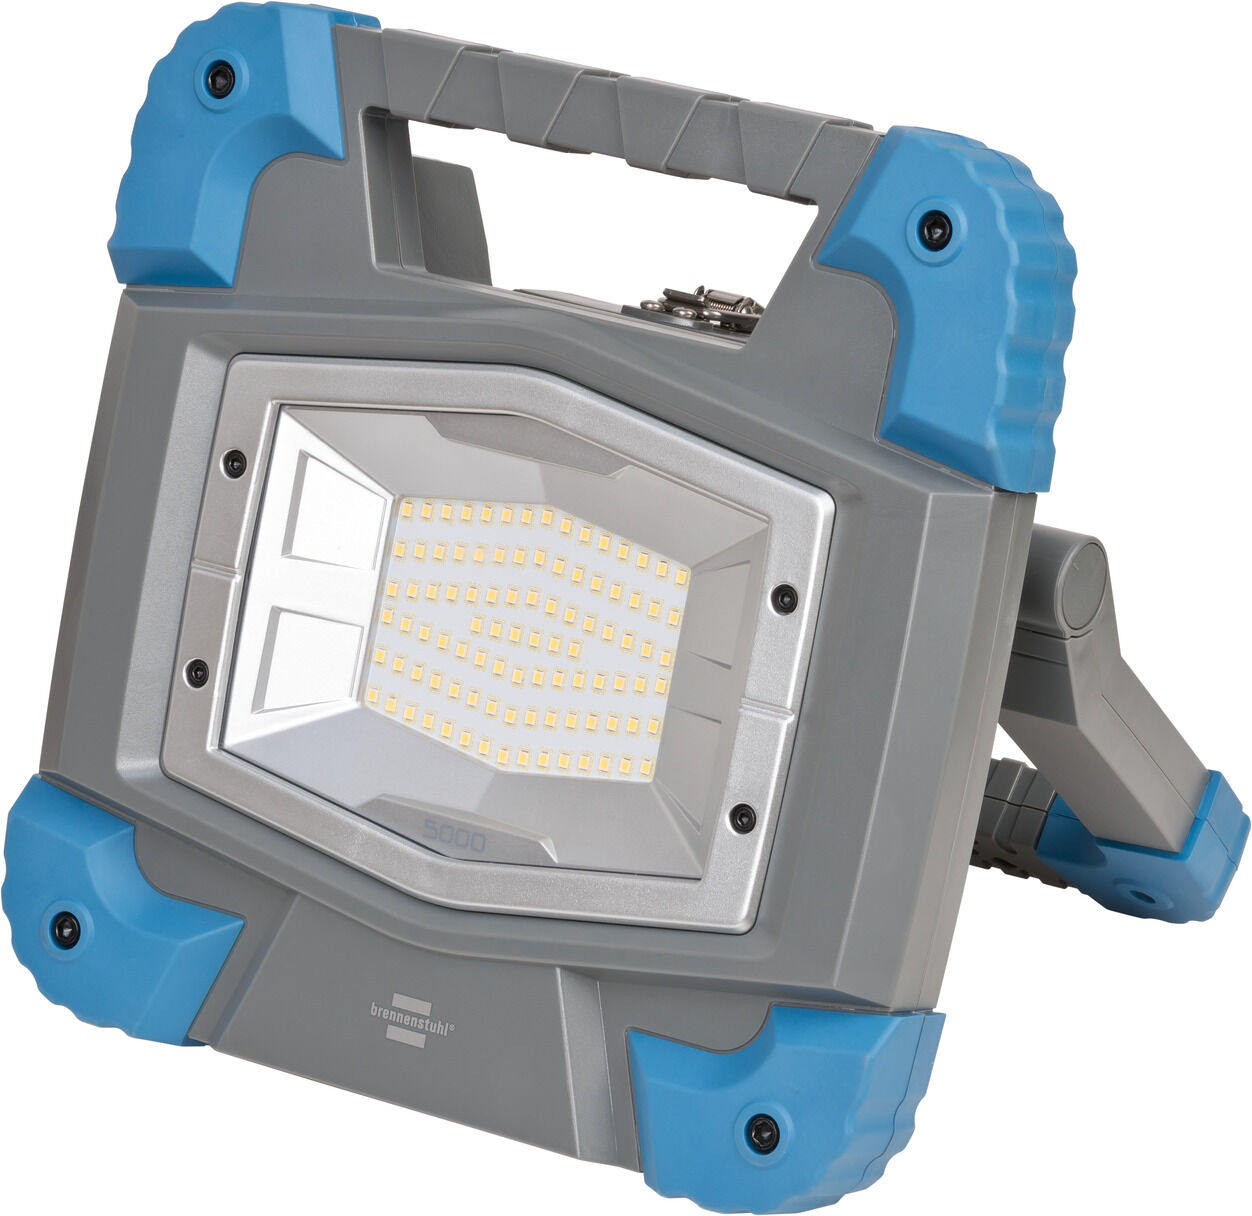 professionalLINE Projecteur de chantier LED portable 360° R23050